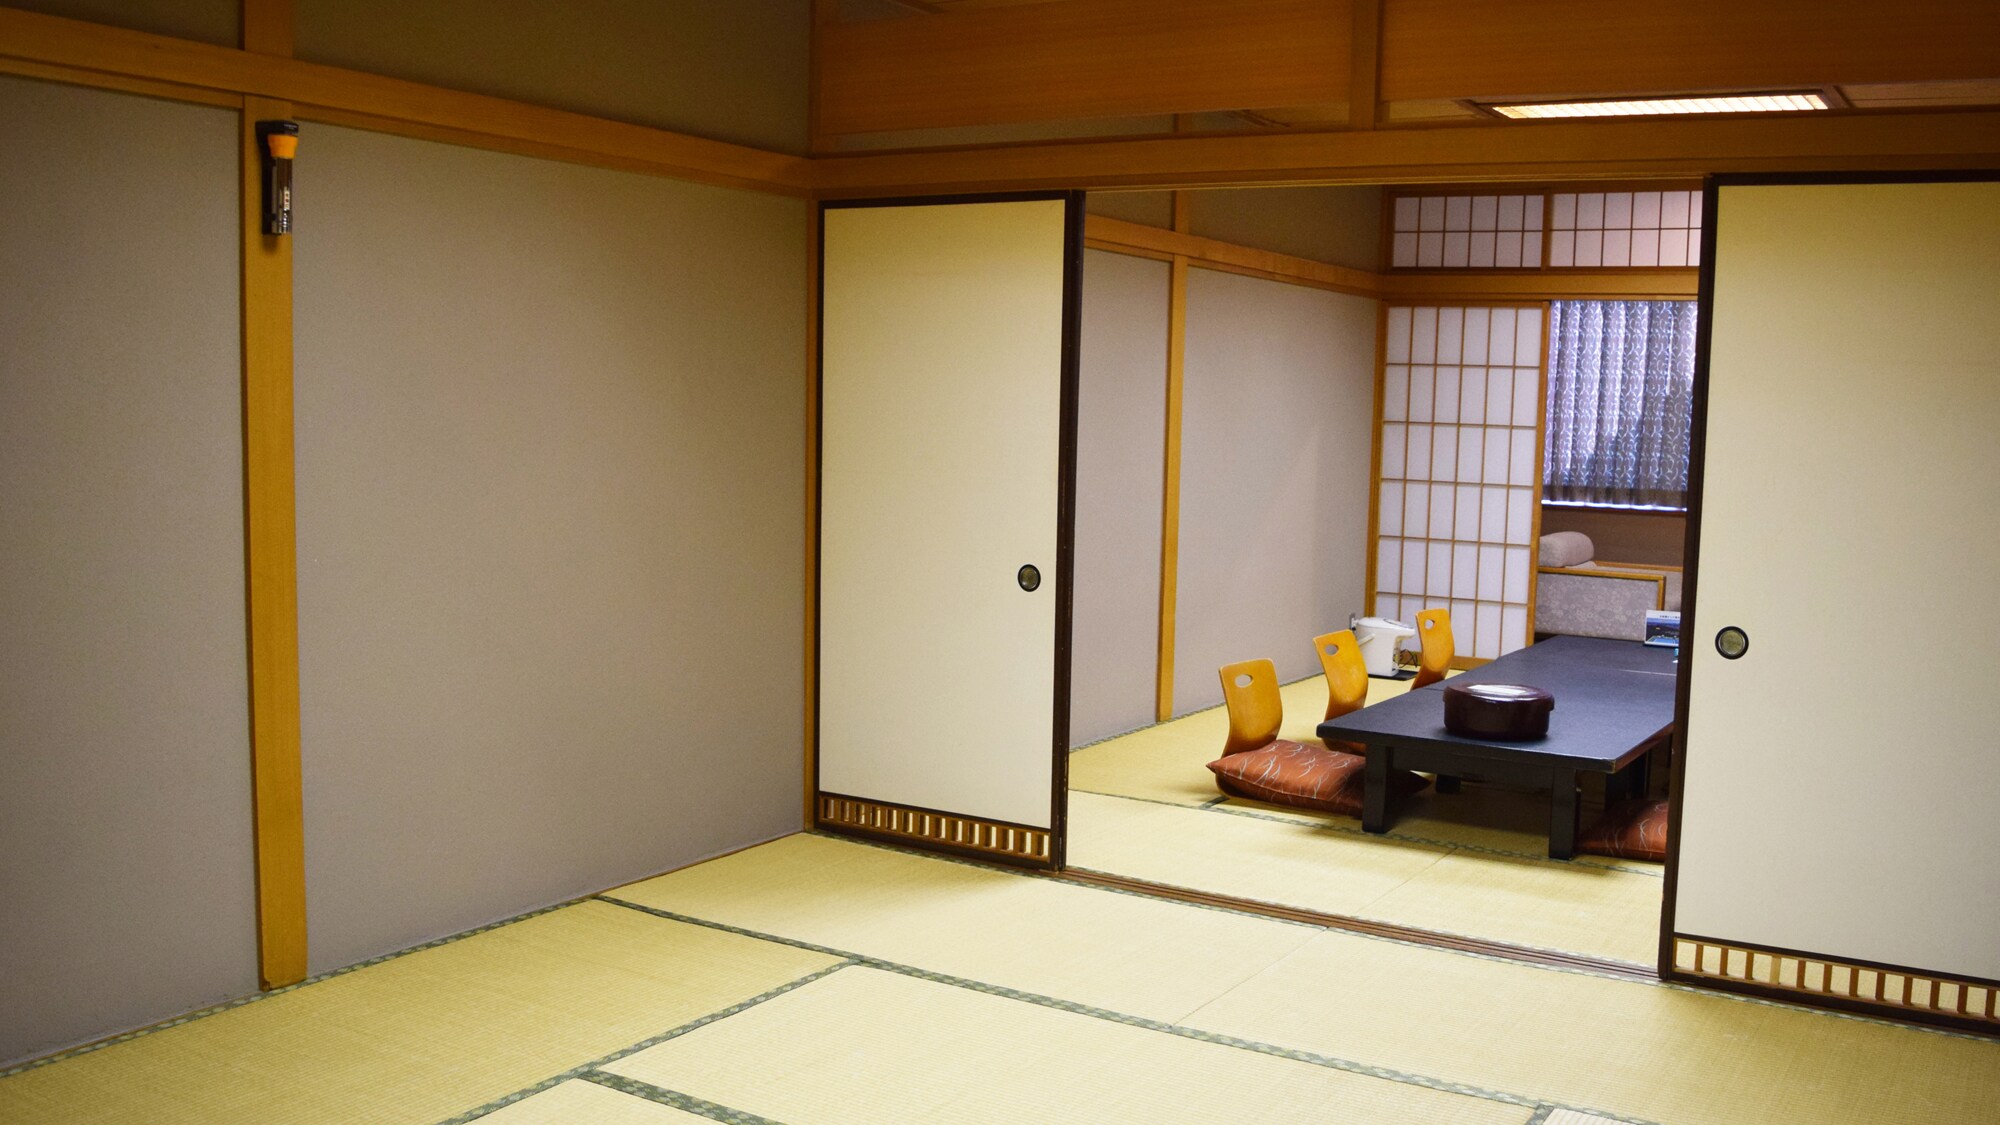 ◆ [ห้องสไตล์ญี่ปุ่นขนาด 18 เสื่อทาทามิขึ้นไป] ห้องที่มีวิวทะเล สำหรับการเดินทางเป็นกลุ่มและครอบครัว มีอ่างอาบน้ำและห้องสุขาเครื่องซักผ้า